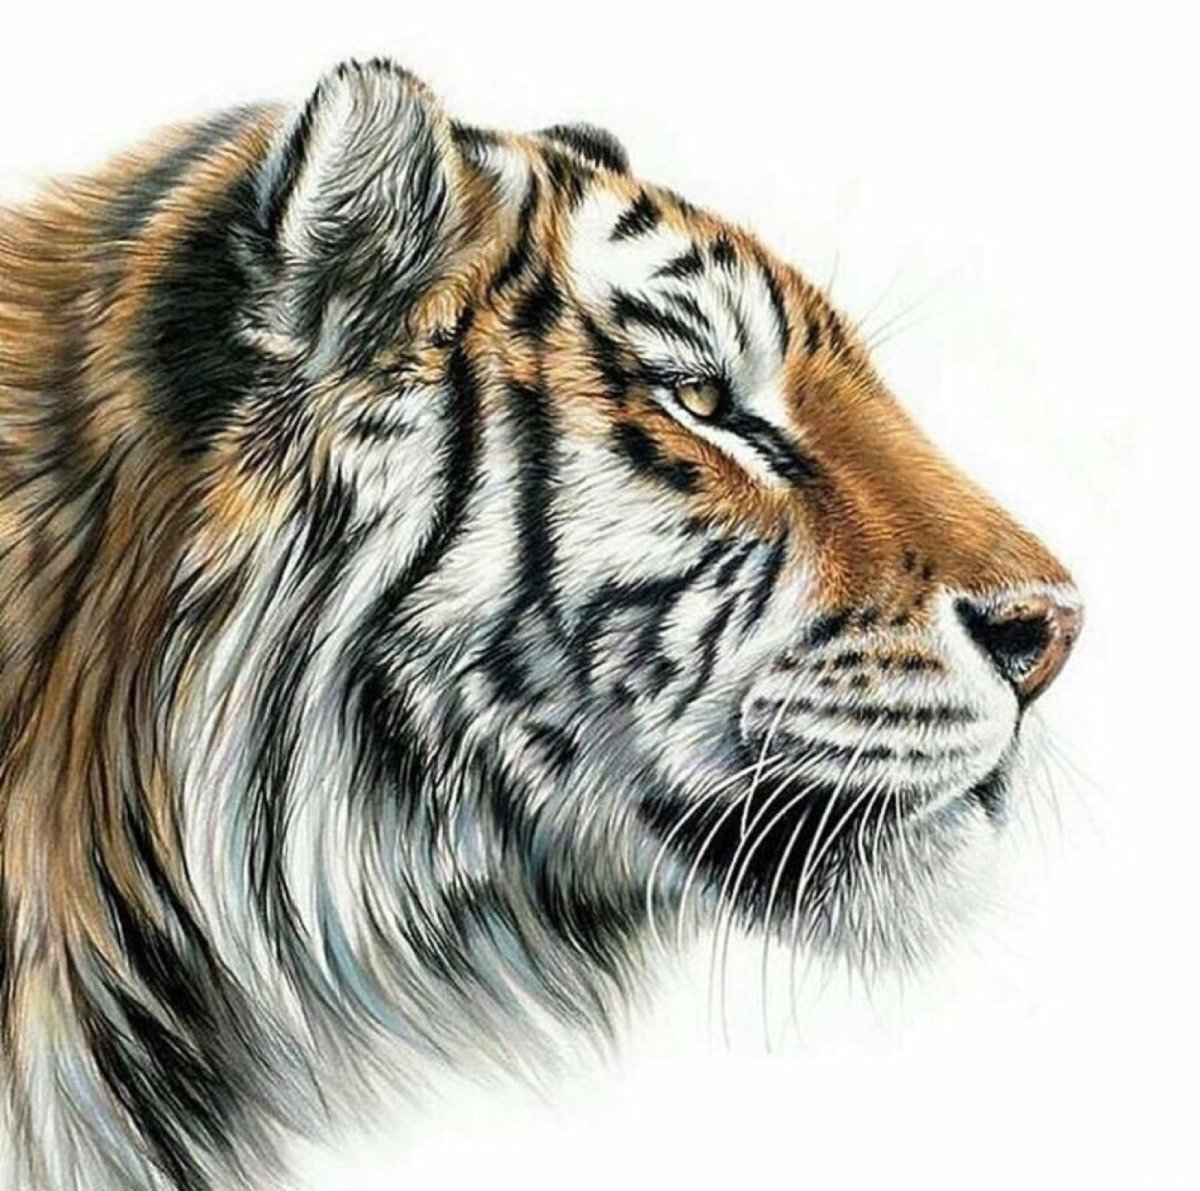 Голова тигра рисунок